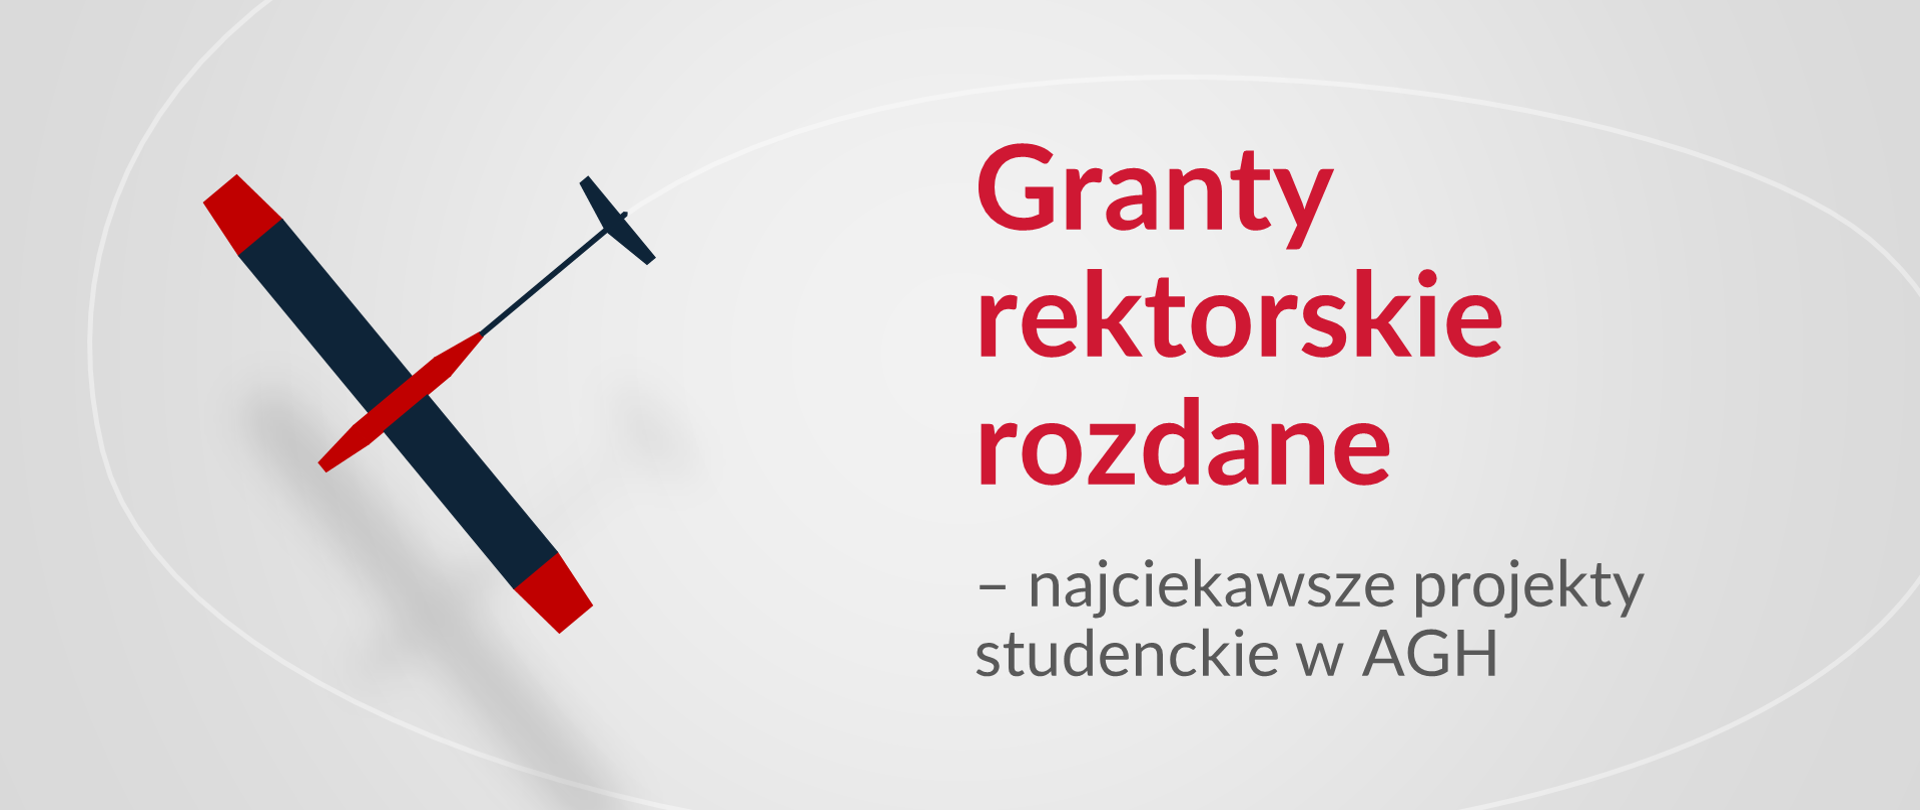 Ikona granatowo-czerwonego szybowca po lewej stronie. Z prawej strony napis: Granty rektorskie rozdane - najciekawsze projekty studenckie w AGH.